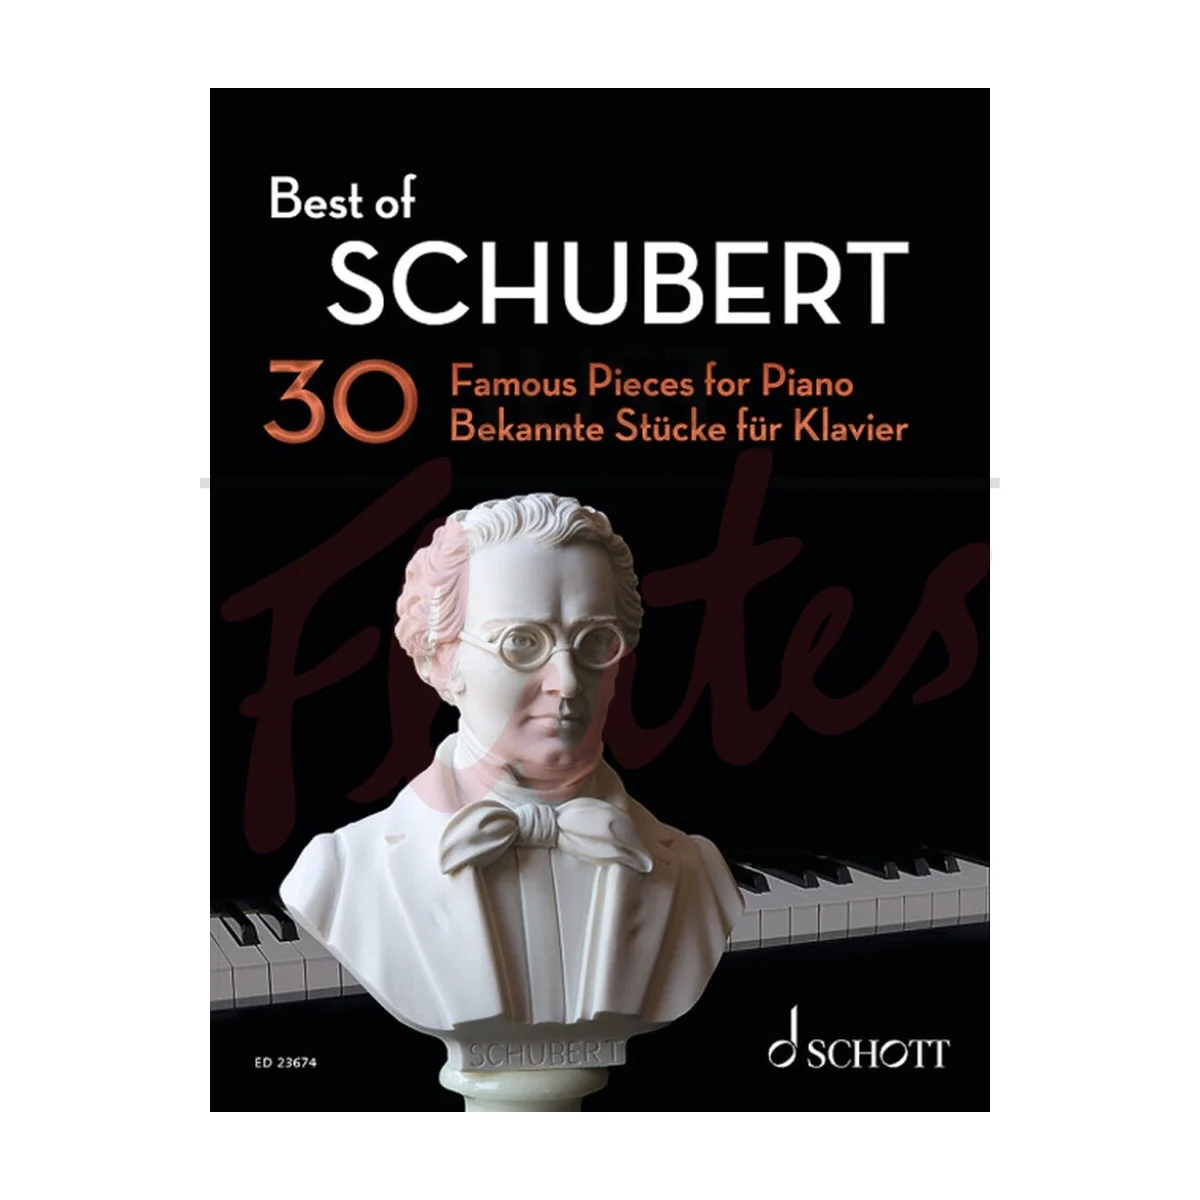 Best of Schubert for Piano